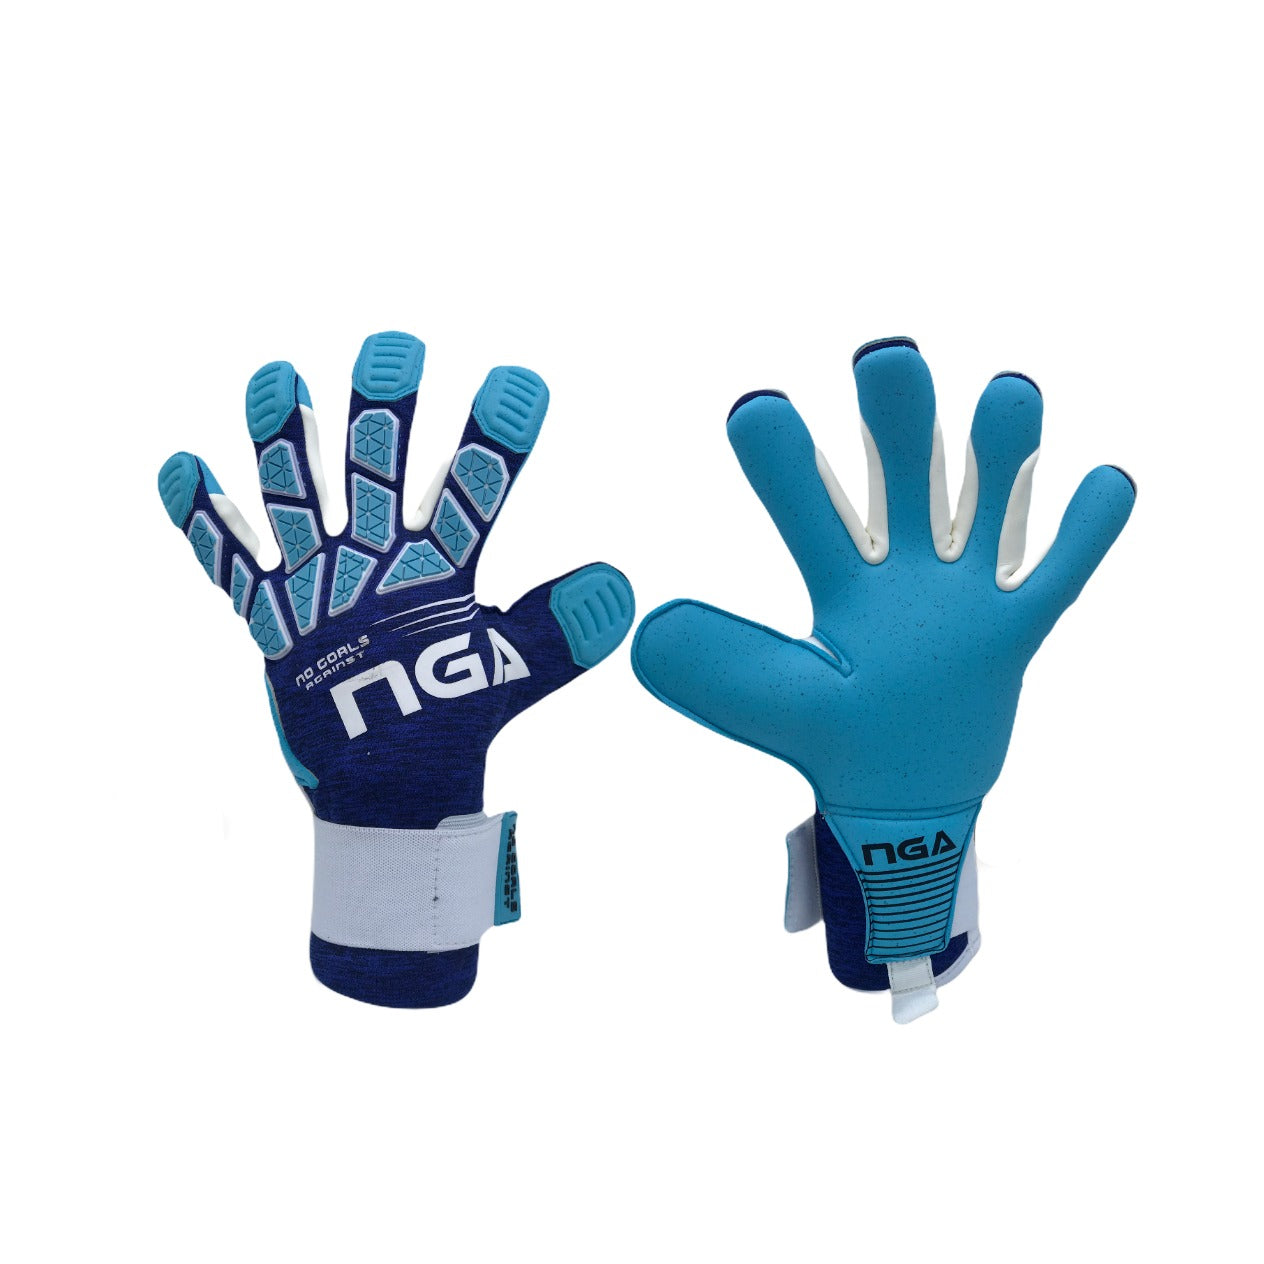 NGA 2020 Venture Sky Goalkeeper Glove